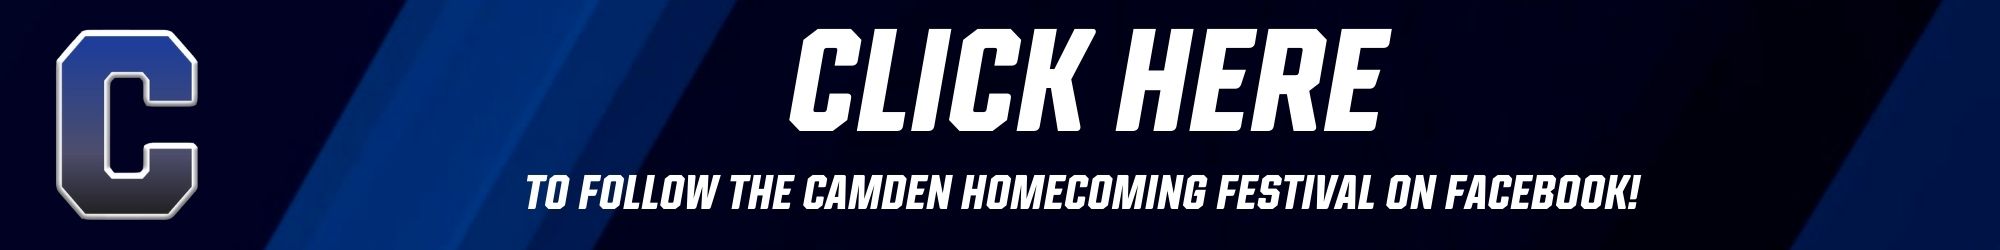 Camden Homecoming Facebook